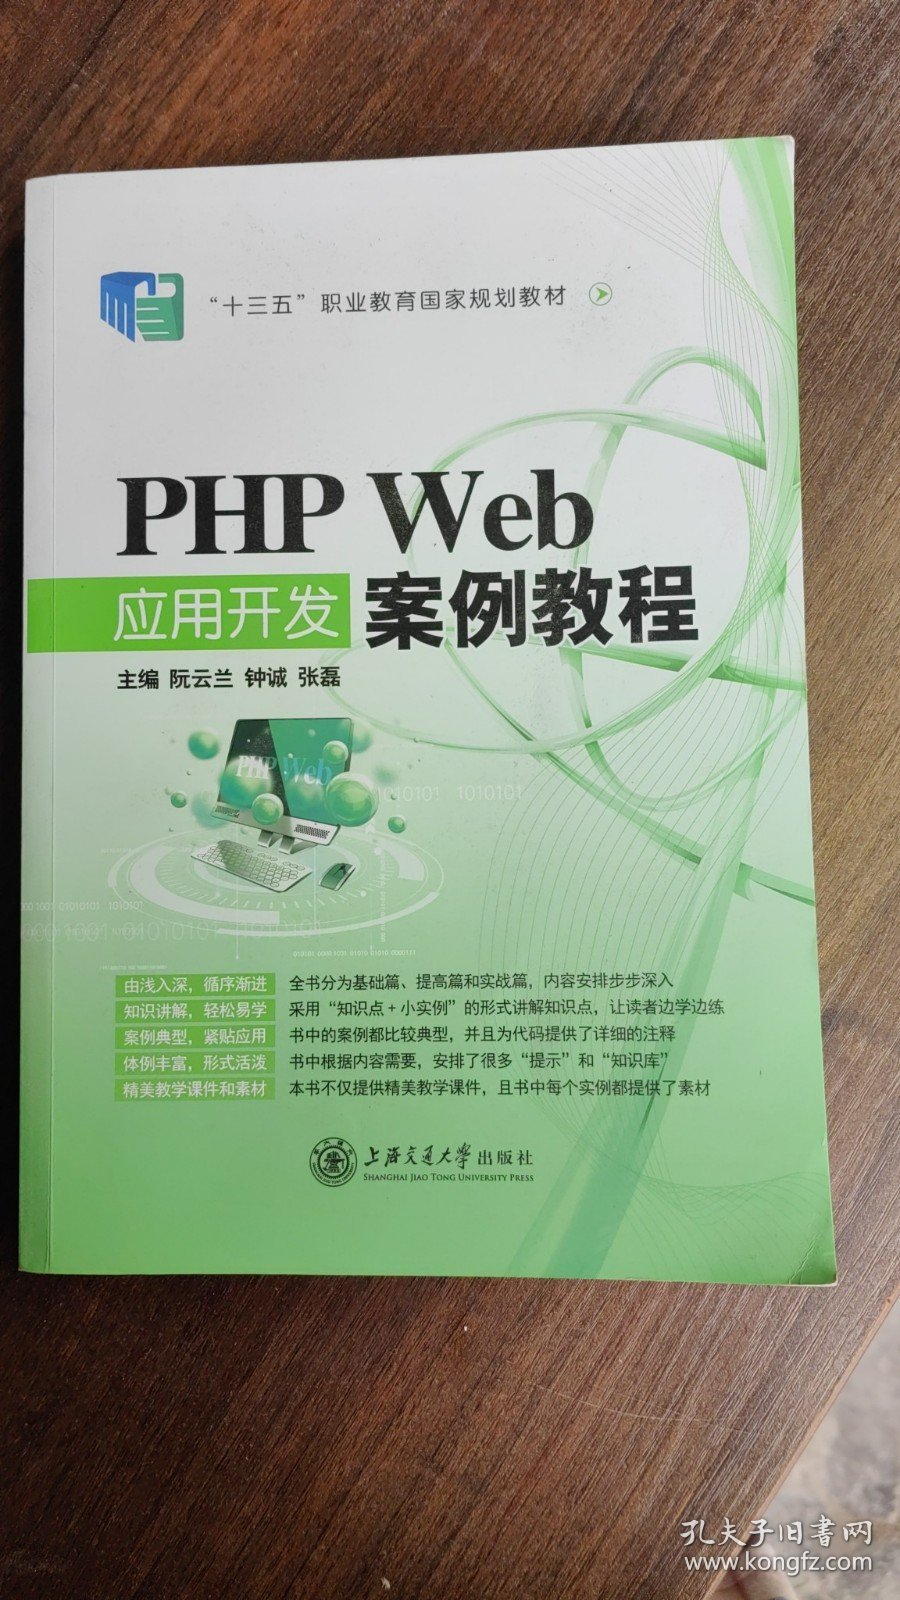 正版二手PHP Web应用开发案例教程 阮云兰、钟诚、张磊 上海交通